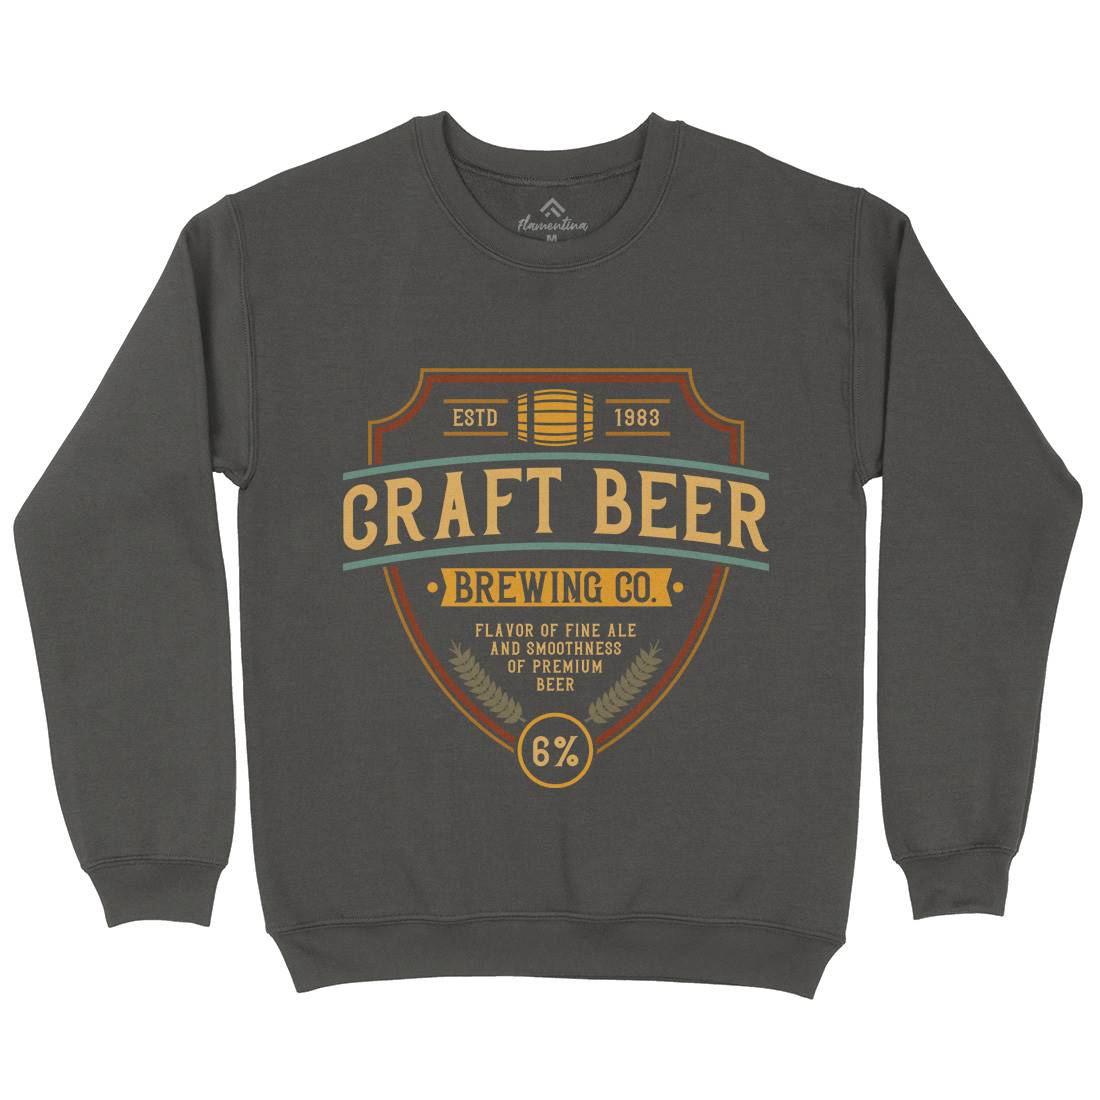 Craft Beer Kids Crew Neck Sweatshirt Drinks C810